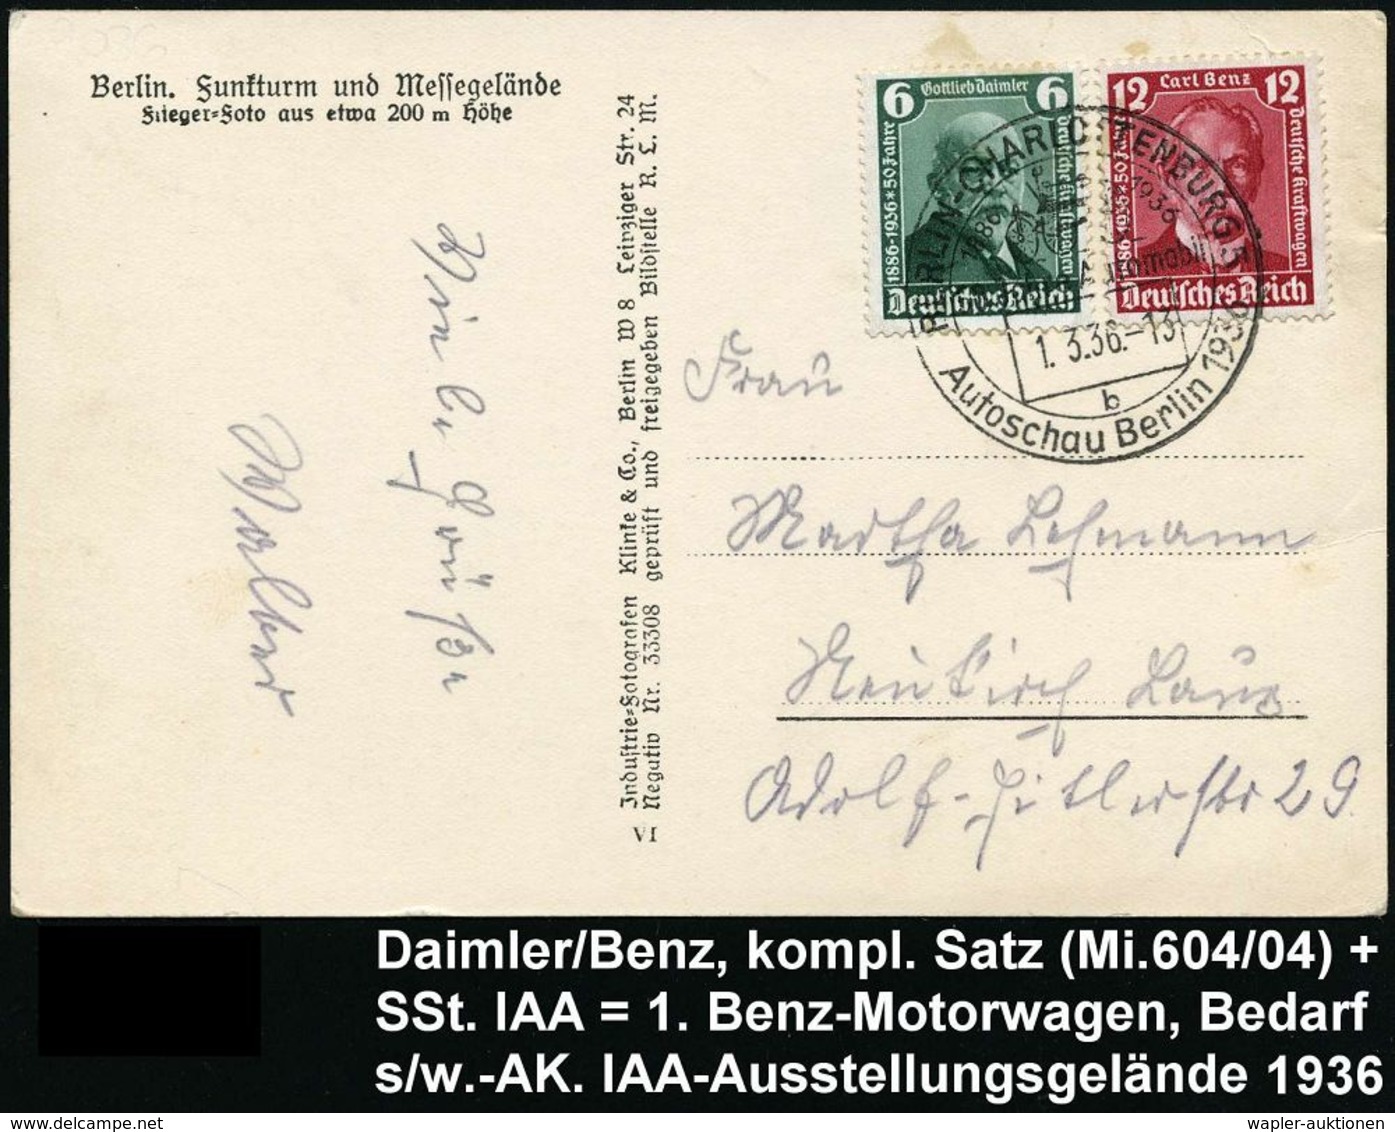 MERCEDES-BENZ  / DAIMLER BENZ : BERLIN-CHARLOTTENBURG 5/ 50 JAHRE AUTOMOBIL/ B/ Autoschau Berlin.. 1936 (1.3.) SSt = 1.  - Voitures